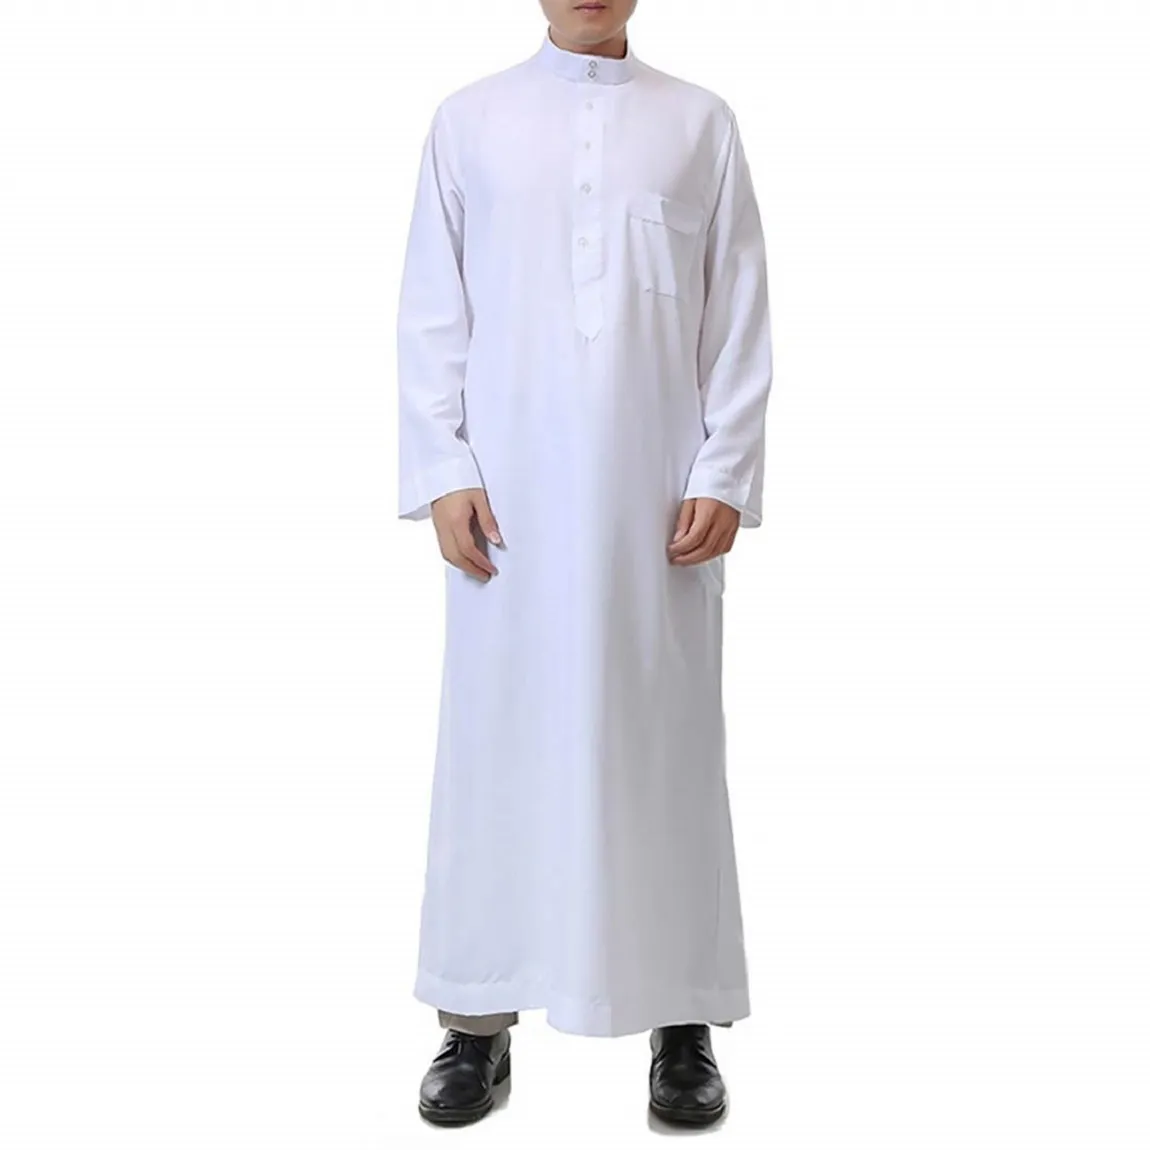 Ropa islámica para hombre, manga larga, calidad cómoda, Arabia Saudí, musulmán, Thobe, pecho bordado, Parche de bolsillo en el pecho